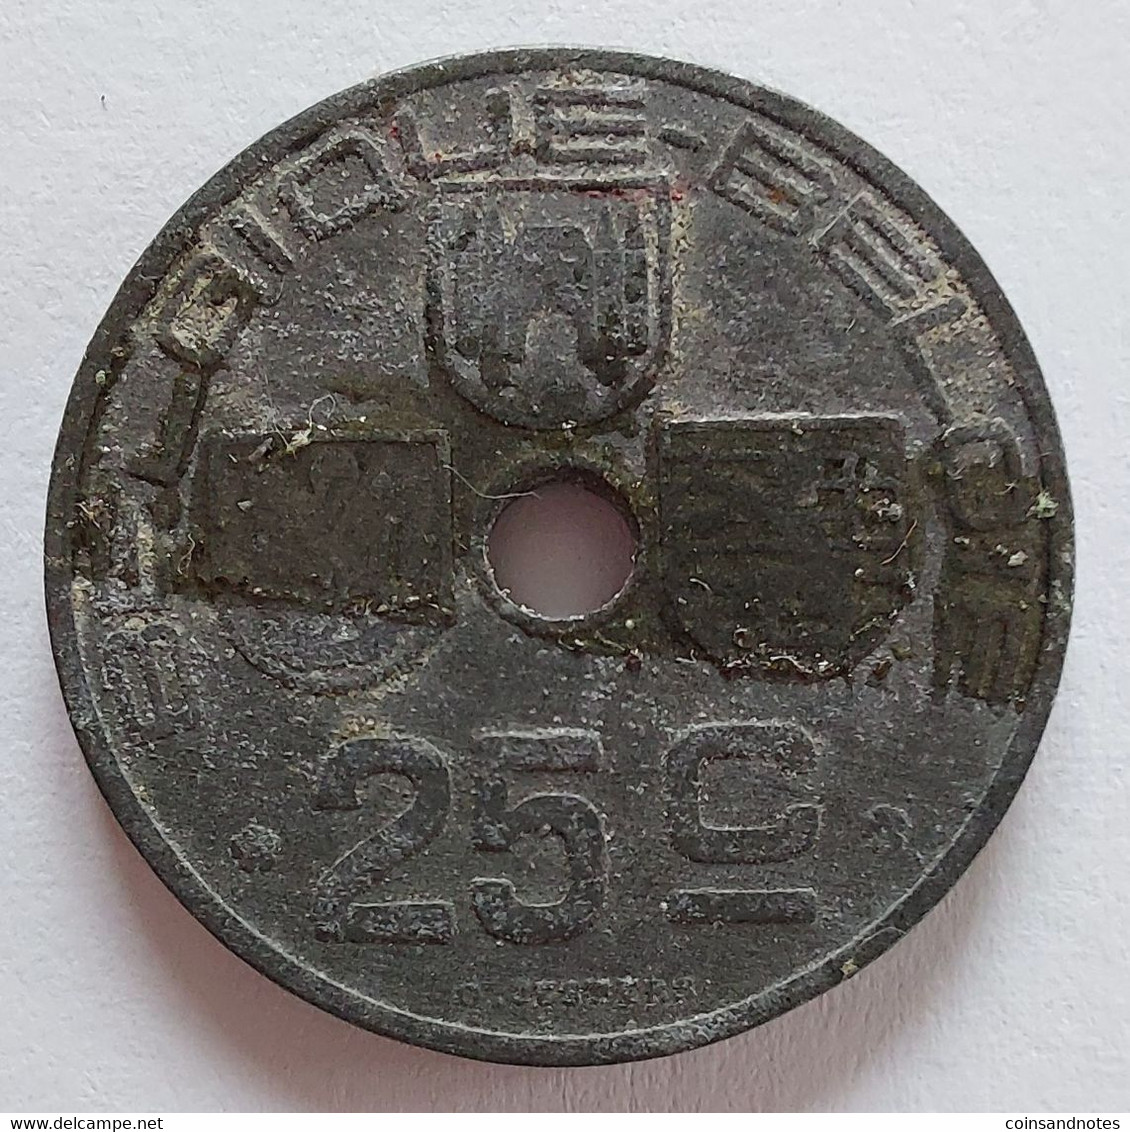 Belgium 1942 - 25 Centiem Zink/Jespers FR/VL - Leopold III - Morin 483 - Pr - 25 Cents